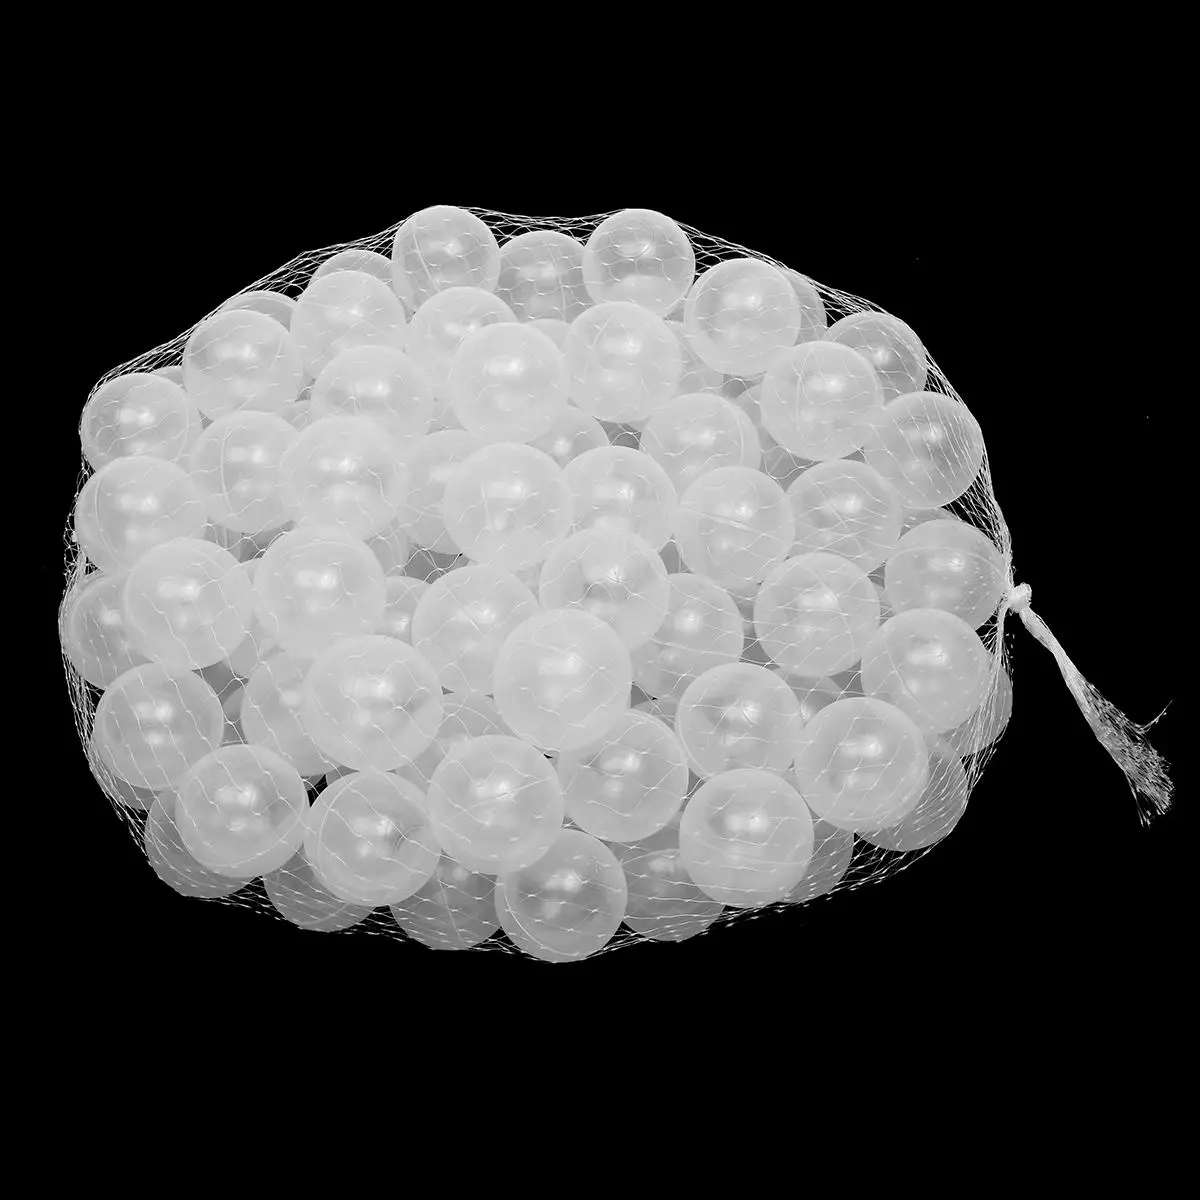 100 шт 7 см экологически чистый шар мягкий пластиковый Океанский шар Забавная детская игрушка для купания безопасный нетоксичный водный бассейн Океанский волнистый шар